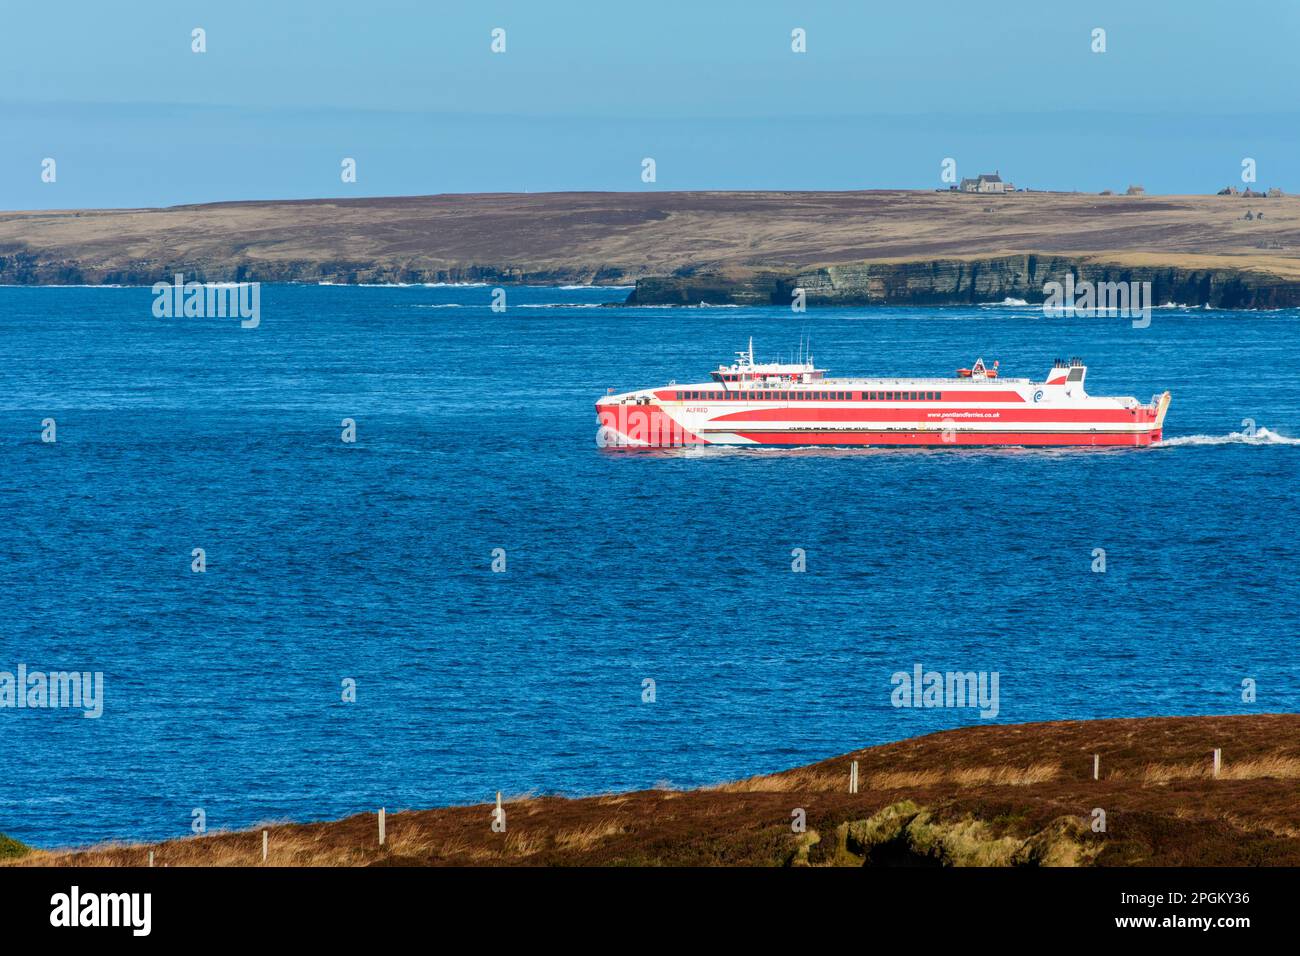 Le traversier de Gills Bay à Orkney, le MV Alfred, passant par le côté est de St. John's point, Caithness, Écosse, Royaume-Uni Banque D'Images